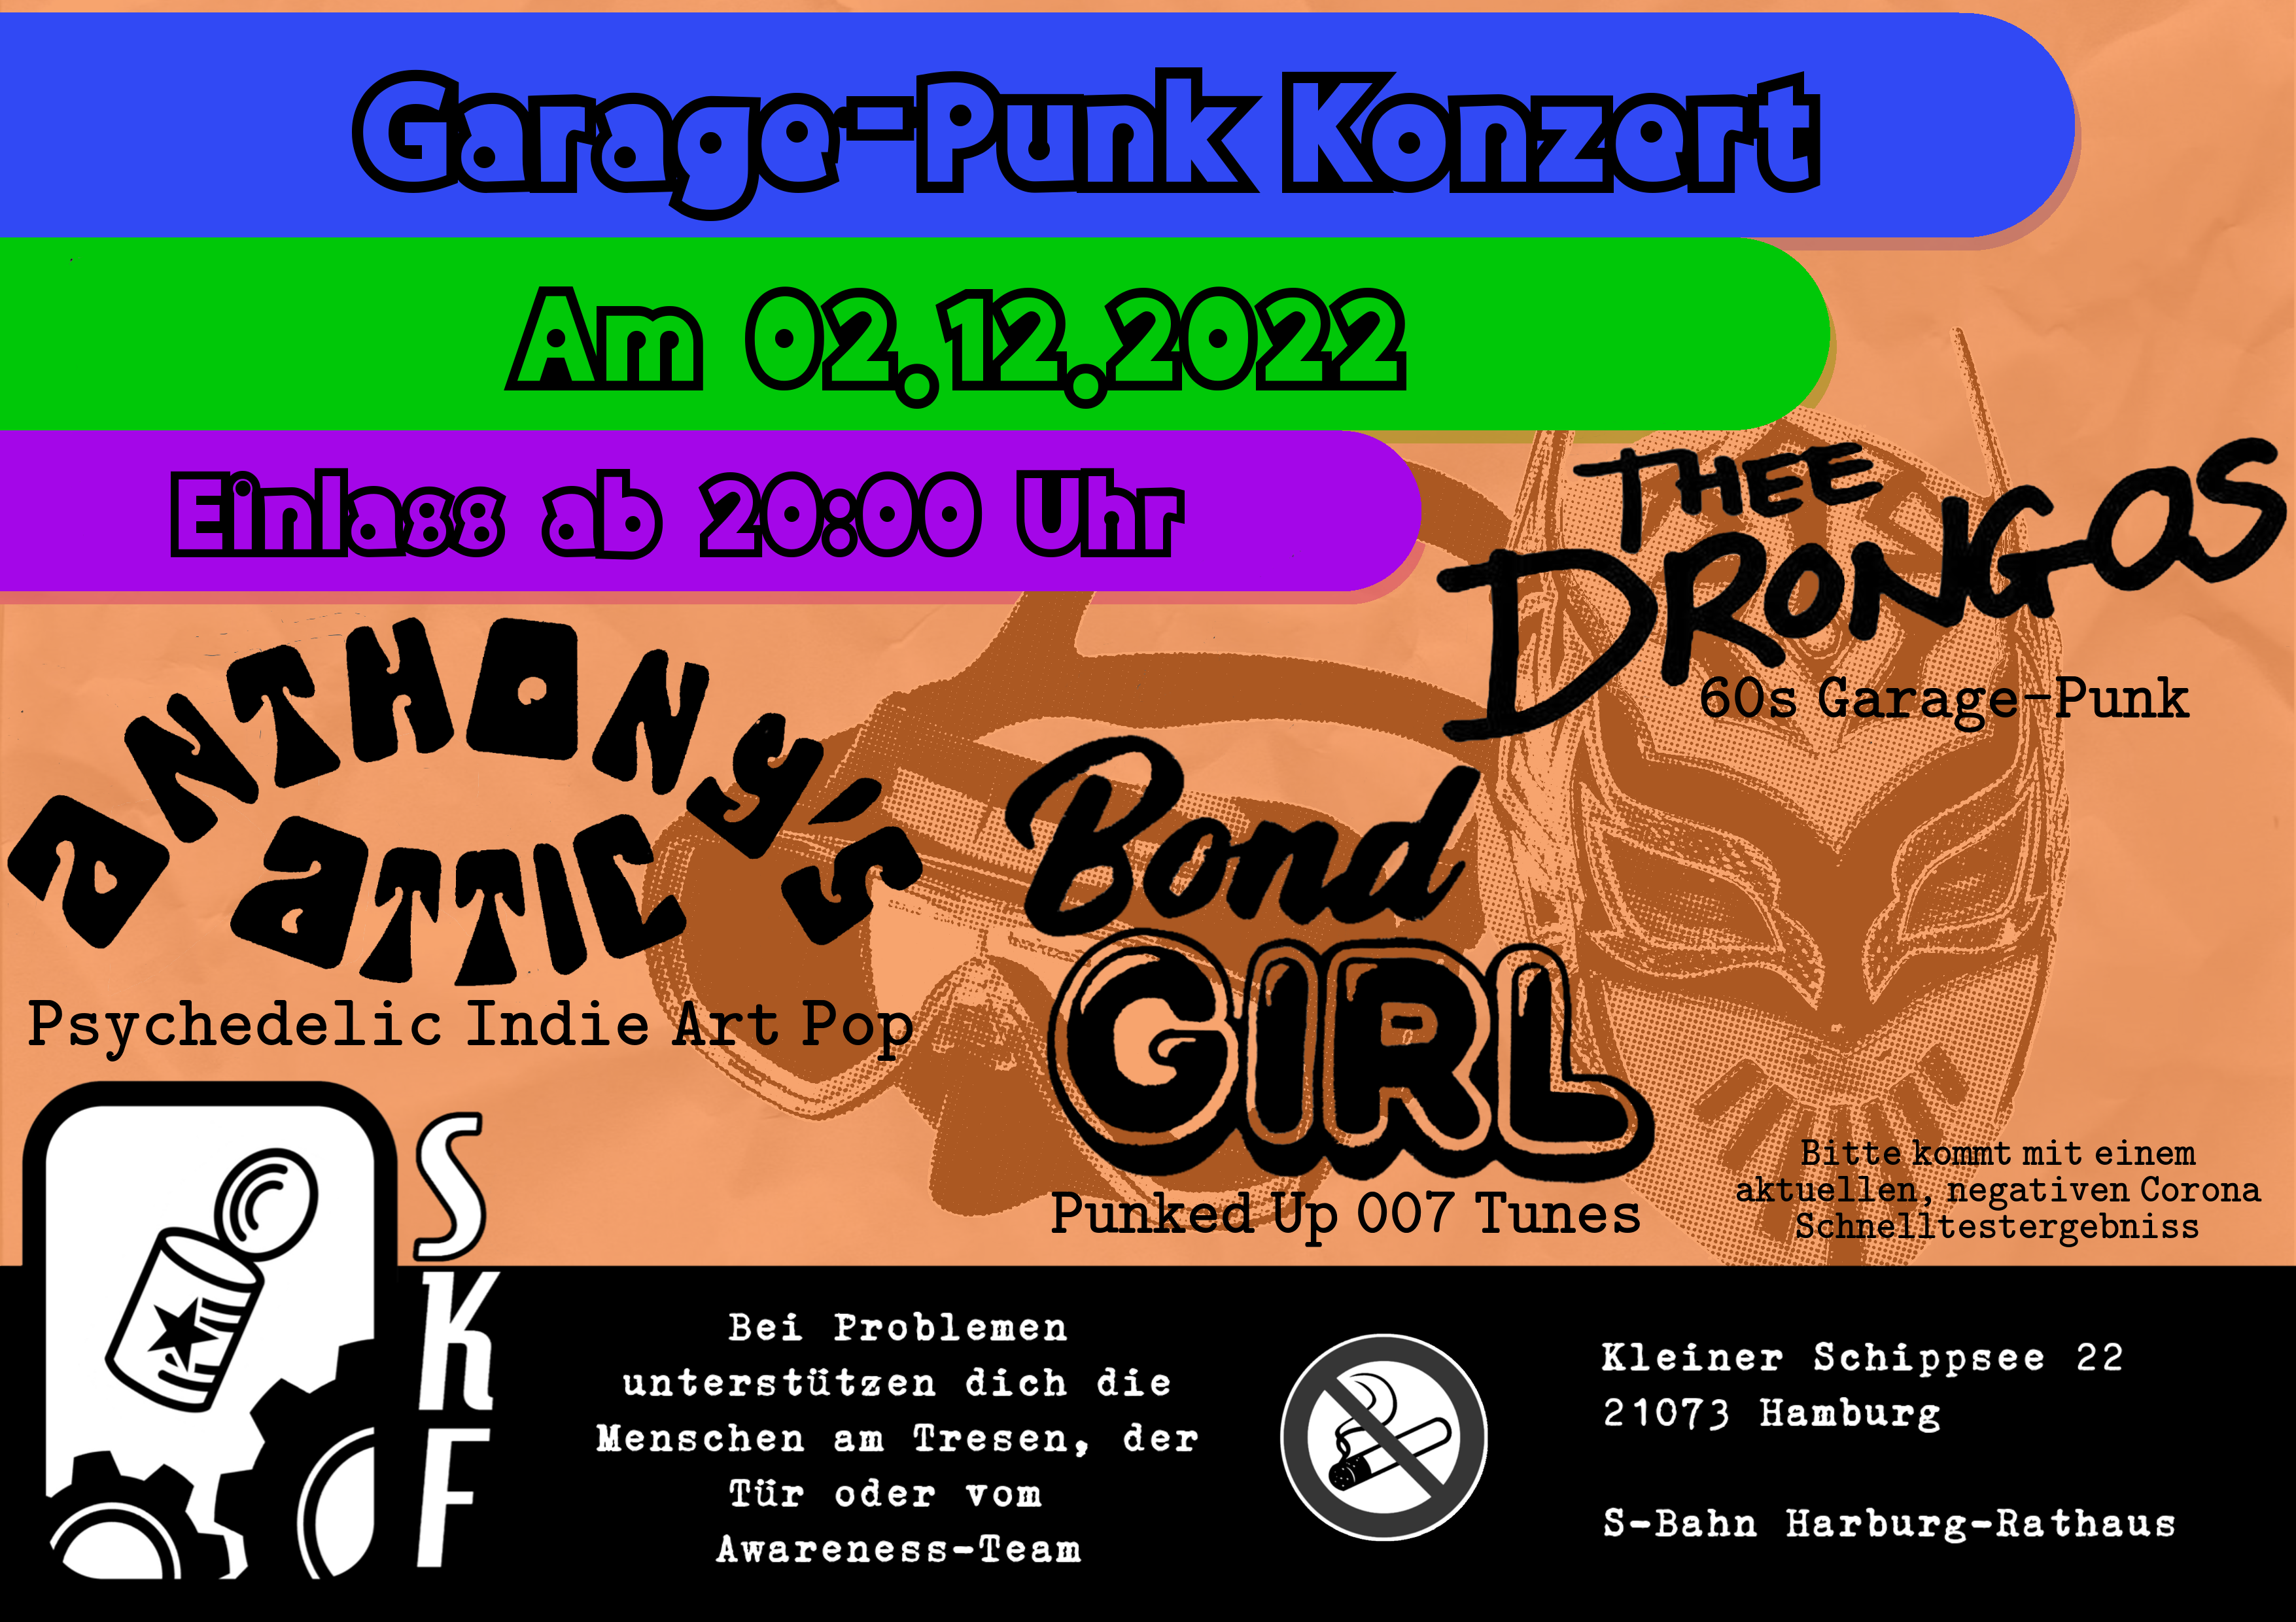 Garage-Punk Konzert